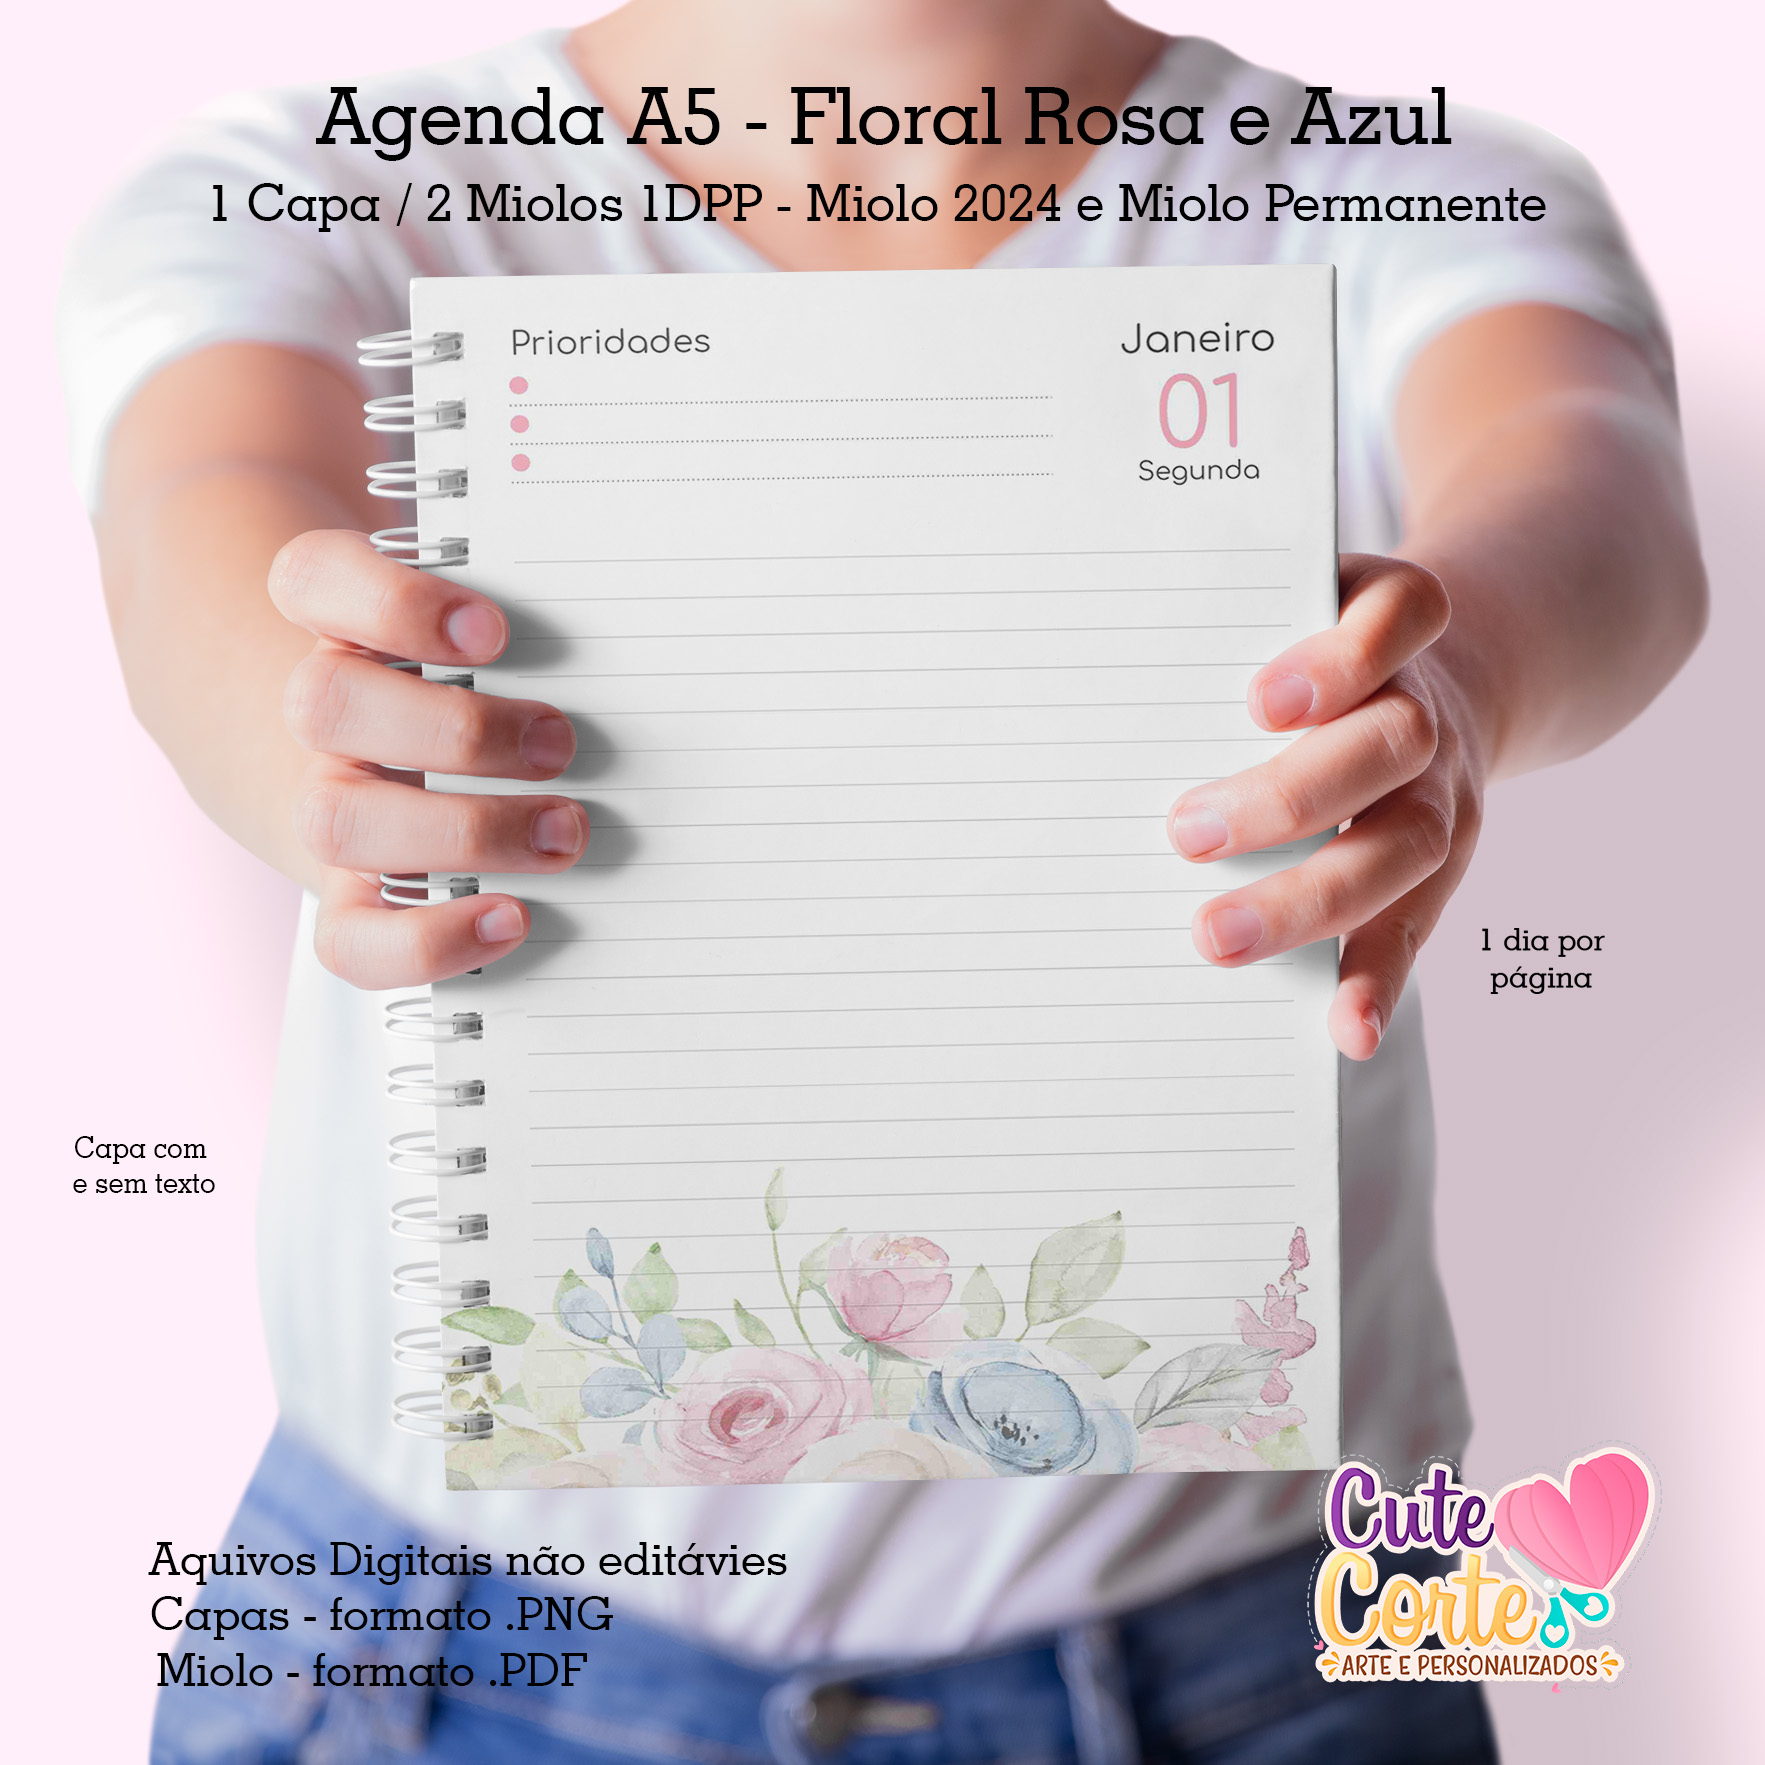 Agenda A5 – Datada – 1 DIA POR PÁGINA – 2 MIOLOS ( 2024 e PERMANENTE) –  Floral Rosa e Azul – Cute Corte